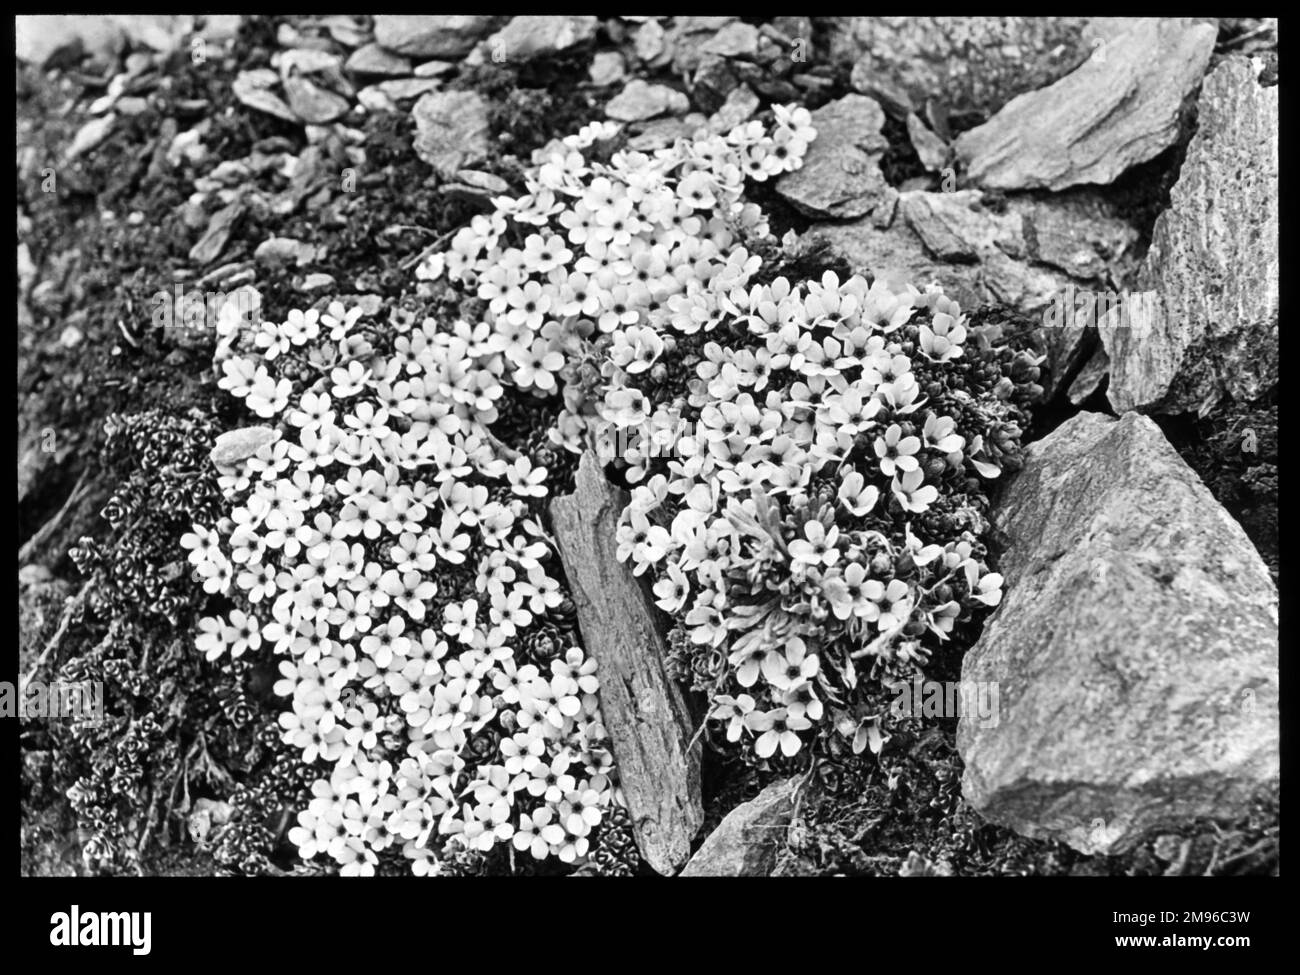 Androsace Glacialis, della famiglia Primulaceae, noto anche come gelsomino di roccia o caramelle fata. Fioriscono nelle fessure rocciose sulle cime alpine, con i fiori rosa che si affievoliscono al bianco all'inizio della primavera. Foto Stock